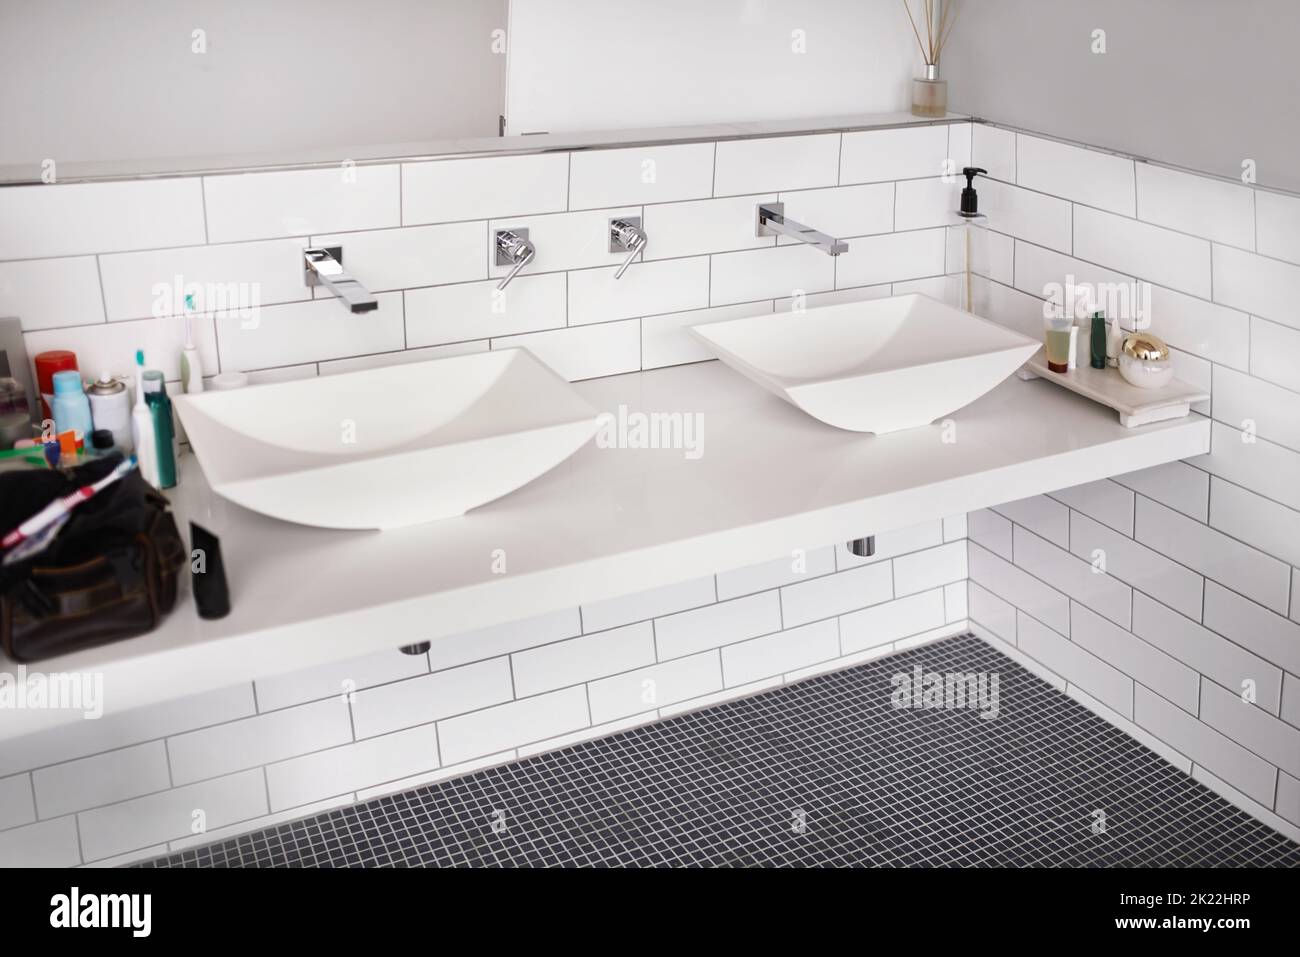 Modernes Design für den heutigen Lebensstil. Modernes und sauberes Badezimmer mit luxuriösen Annehmlichkeiten. Stockfoto